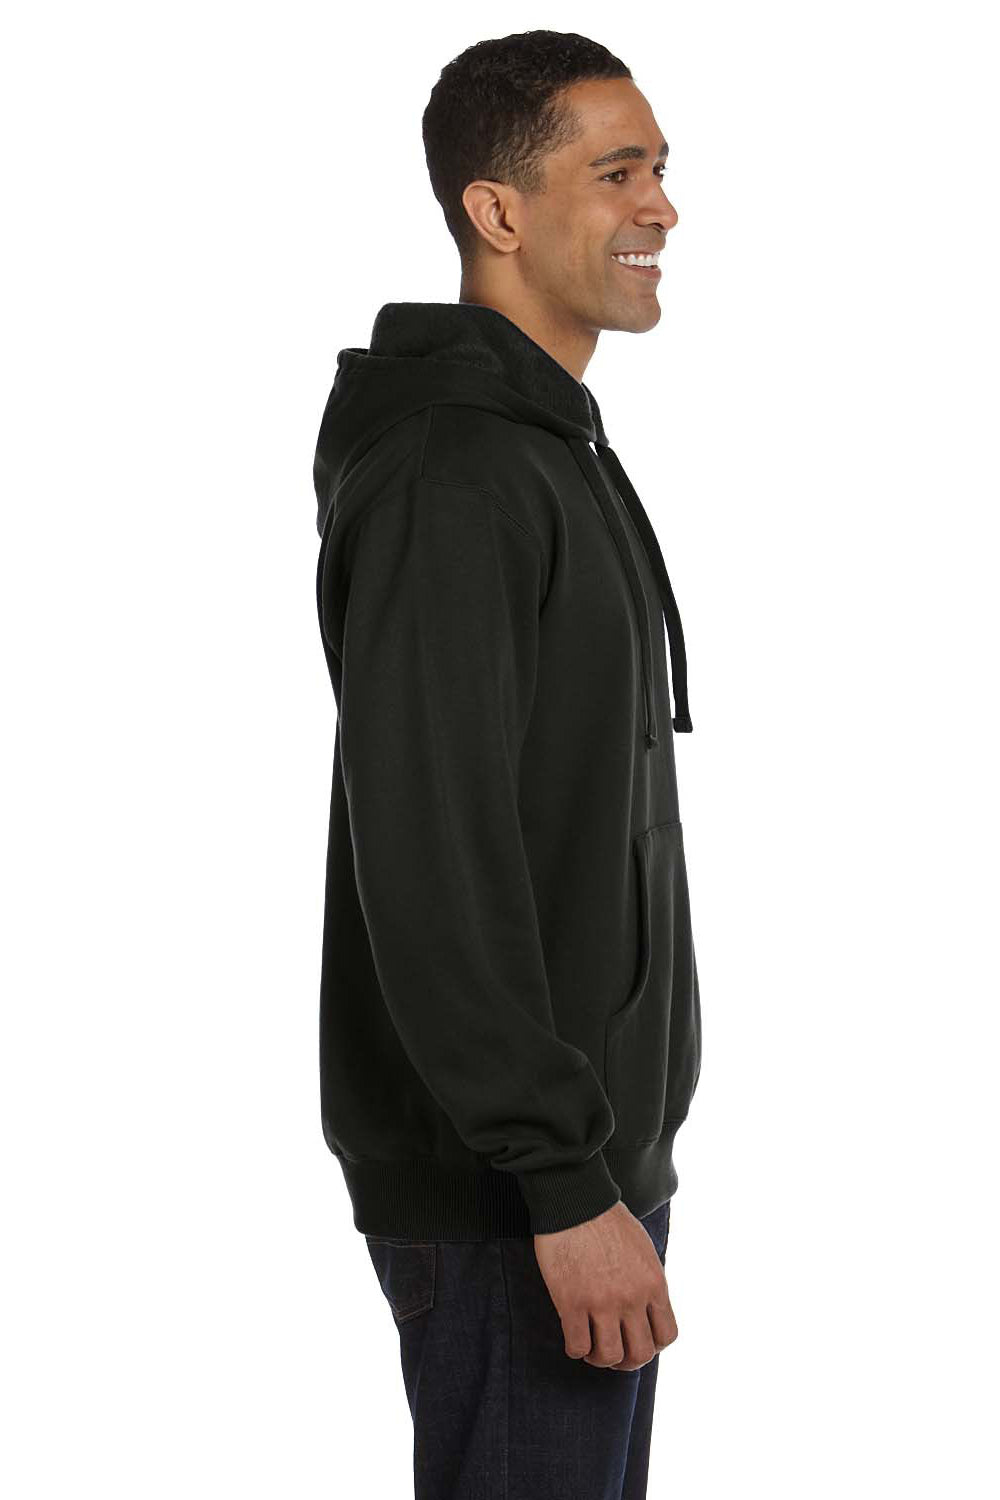 Econscious EC5500 Mens Hooded Sweatshirt Hoodie Black Side